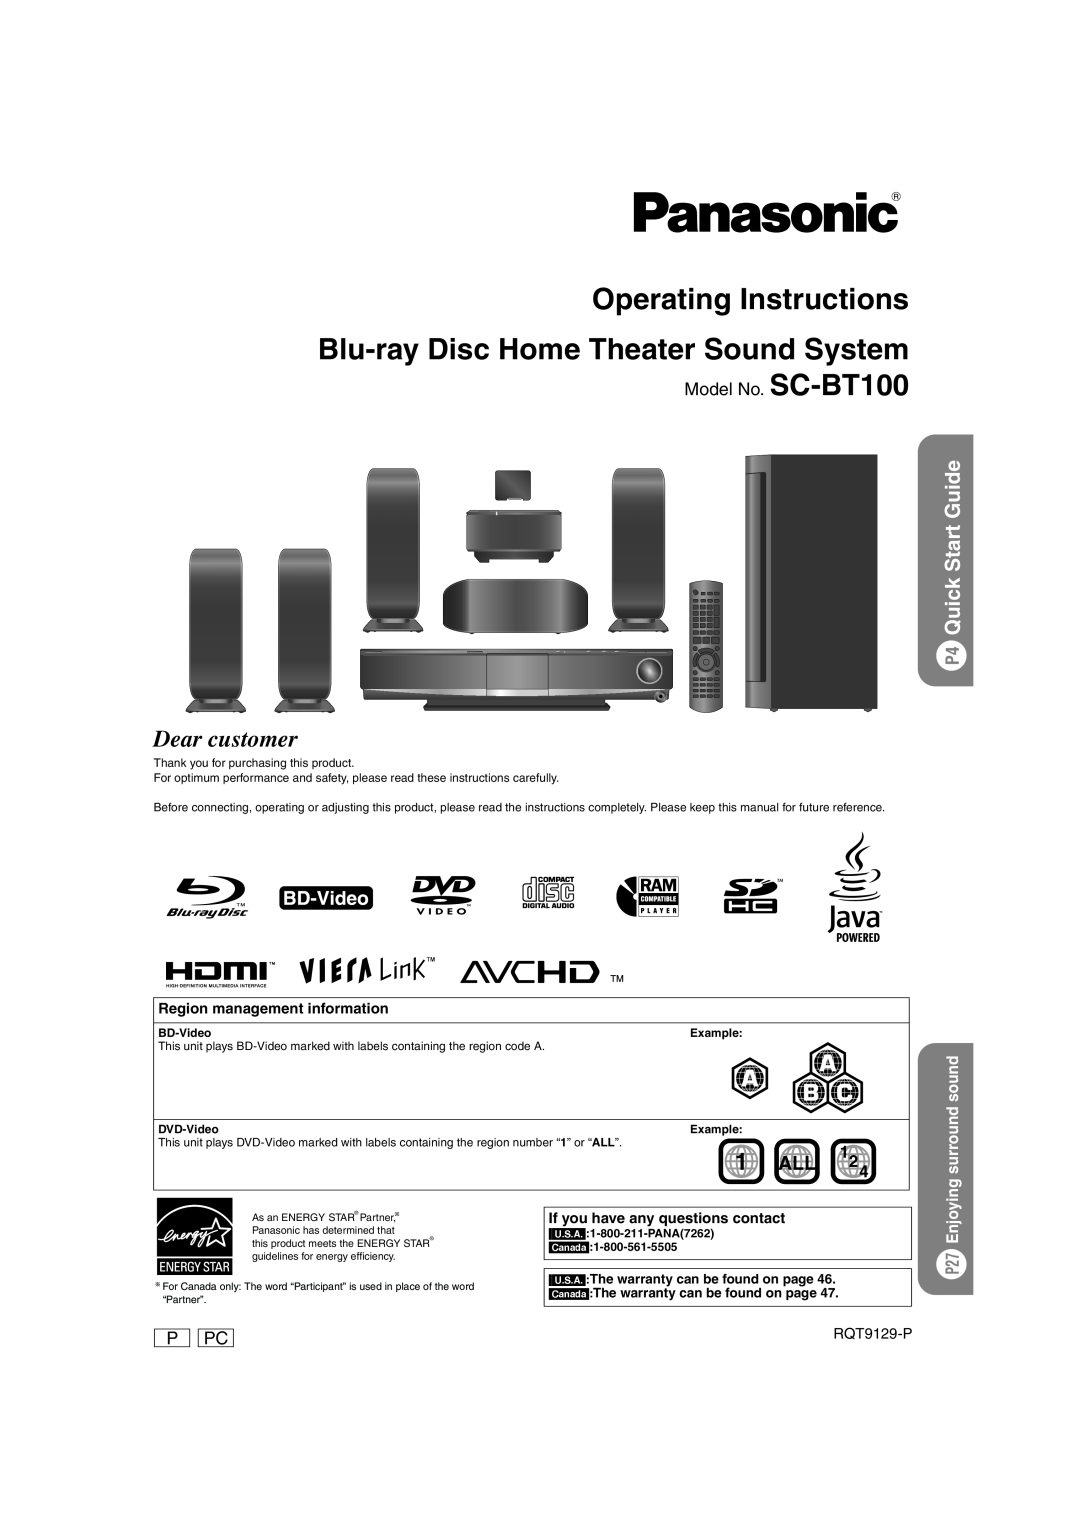 Panasonic SC-BT100 warranty P4 Quick Start Guide, P27 Enjoying surround sound, Region management information, RQT9129-P 